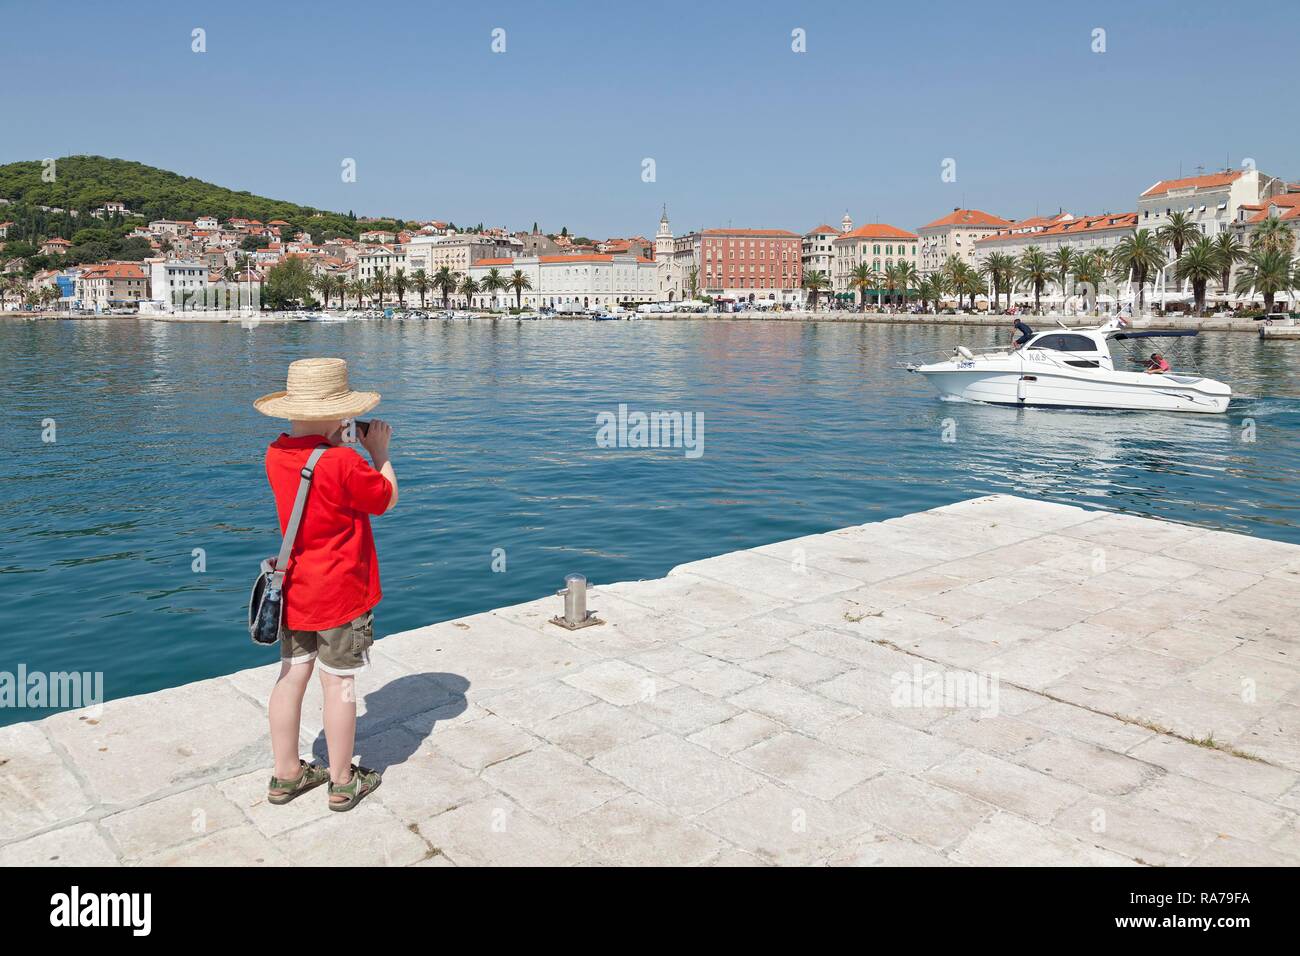 Boy taking pictures, Promenade, Split, Dalmatia, Croatia Stock Photo